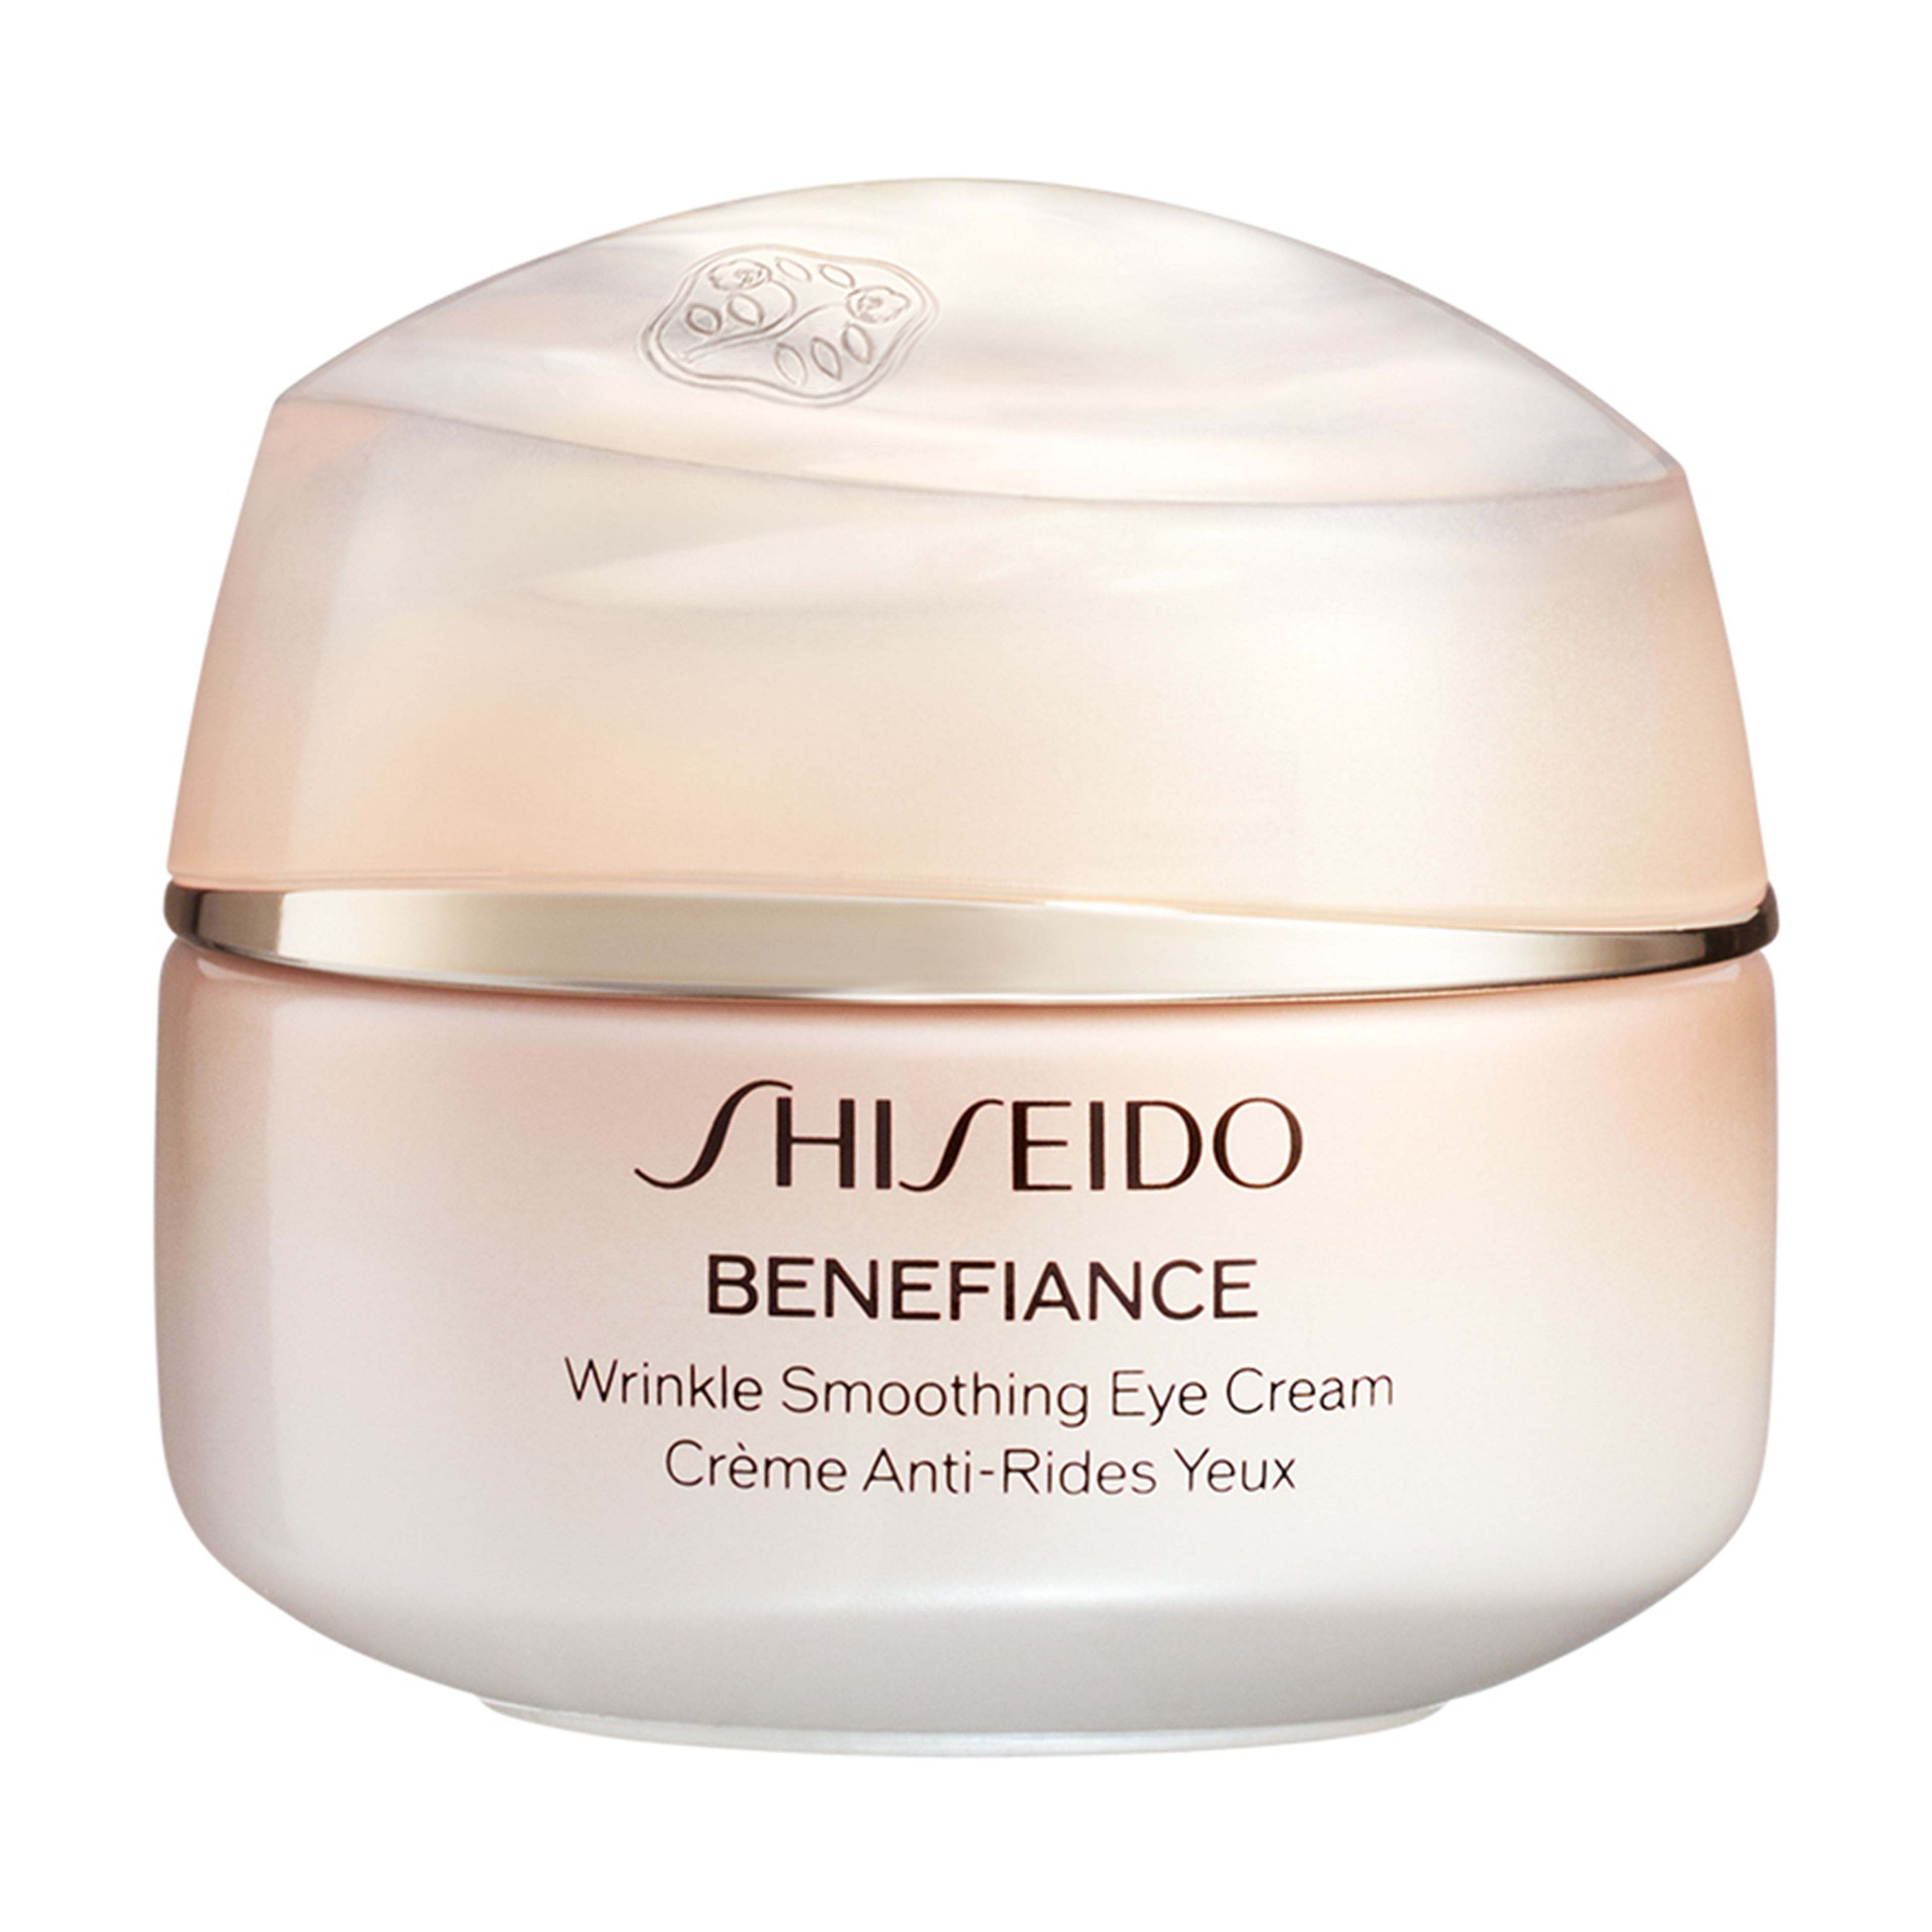 Shiseido Wrinkle Smoothing Eye Cream 1